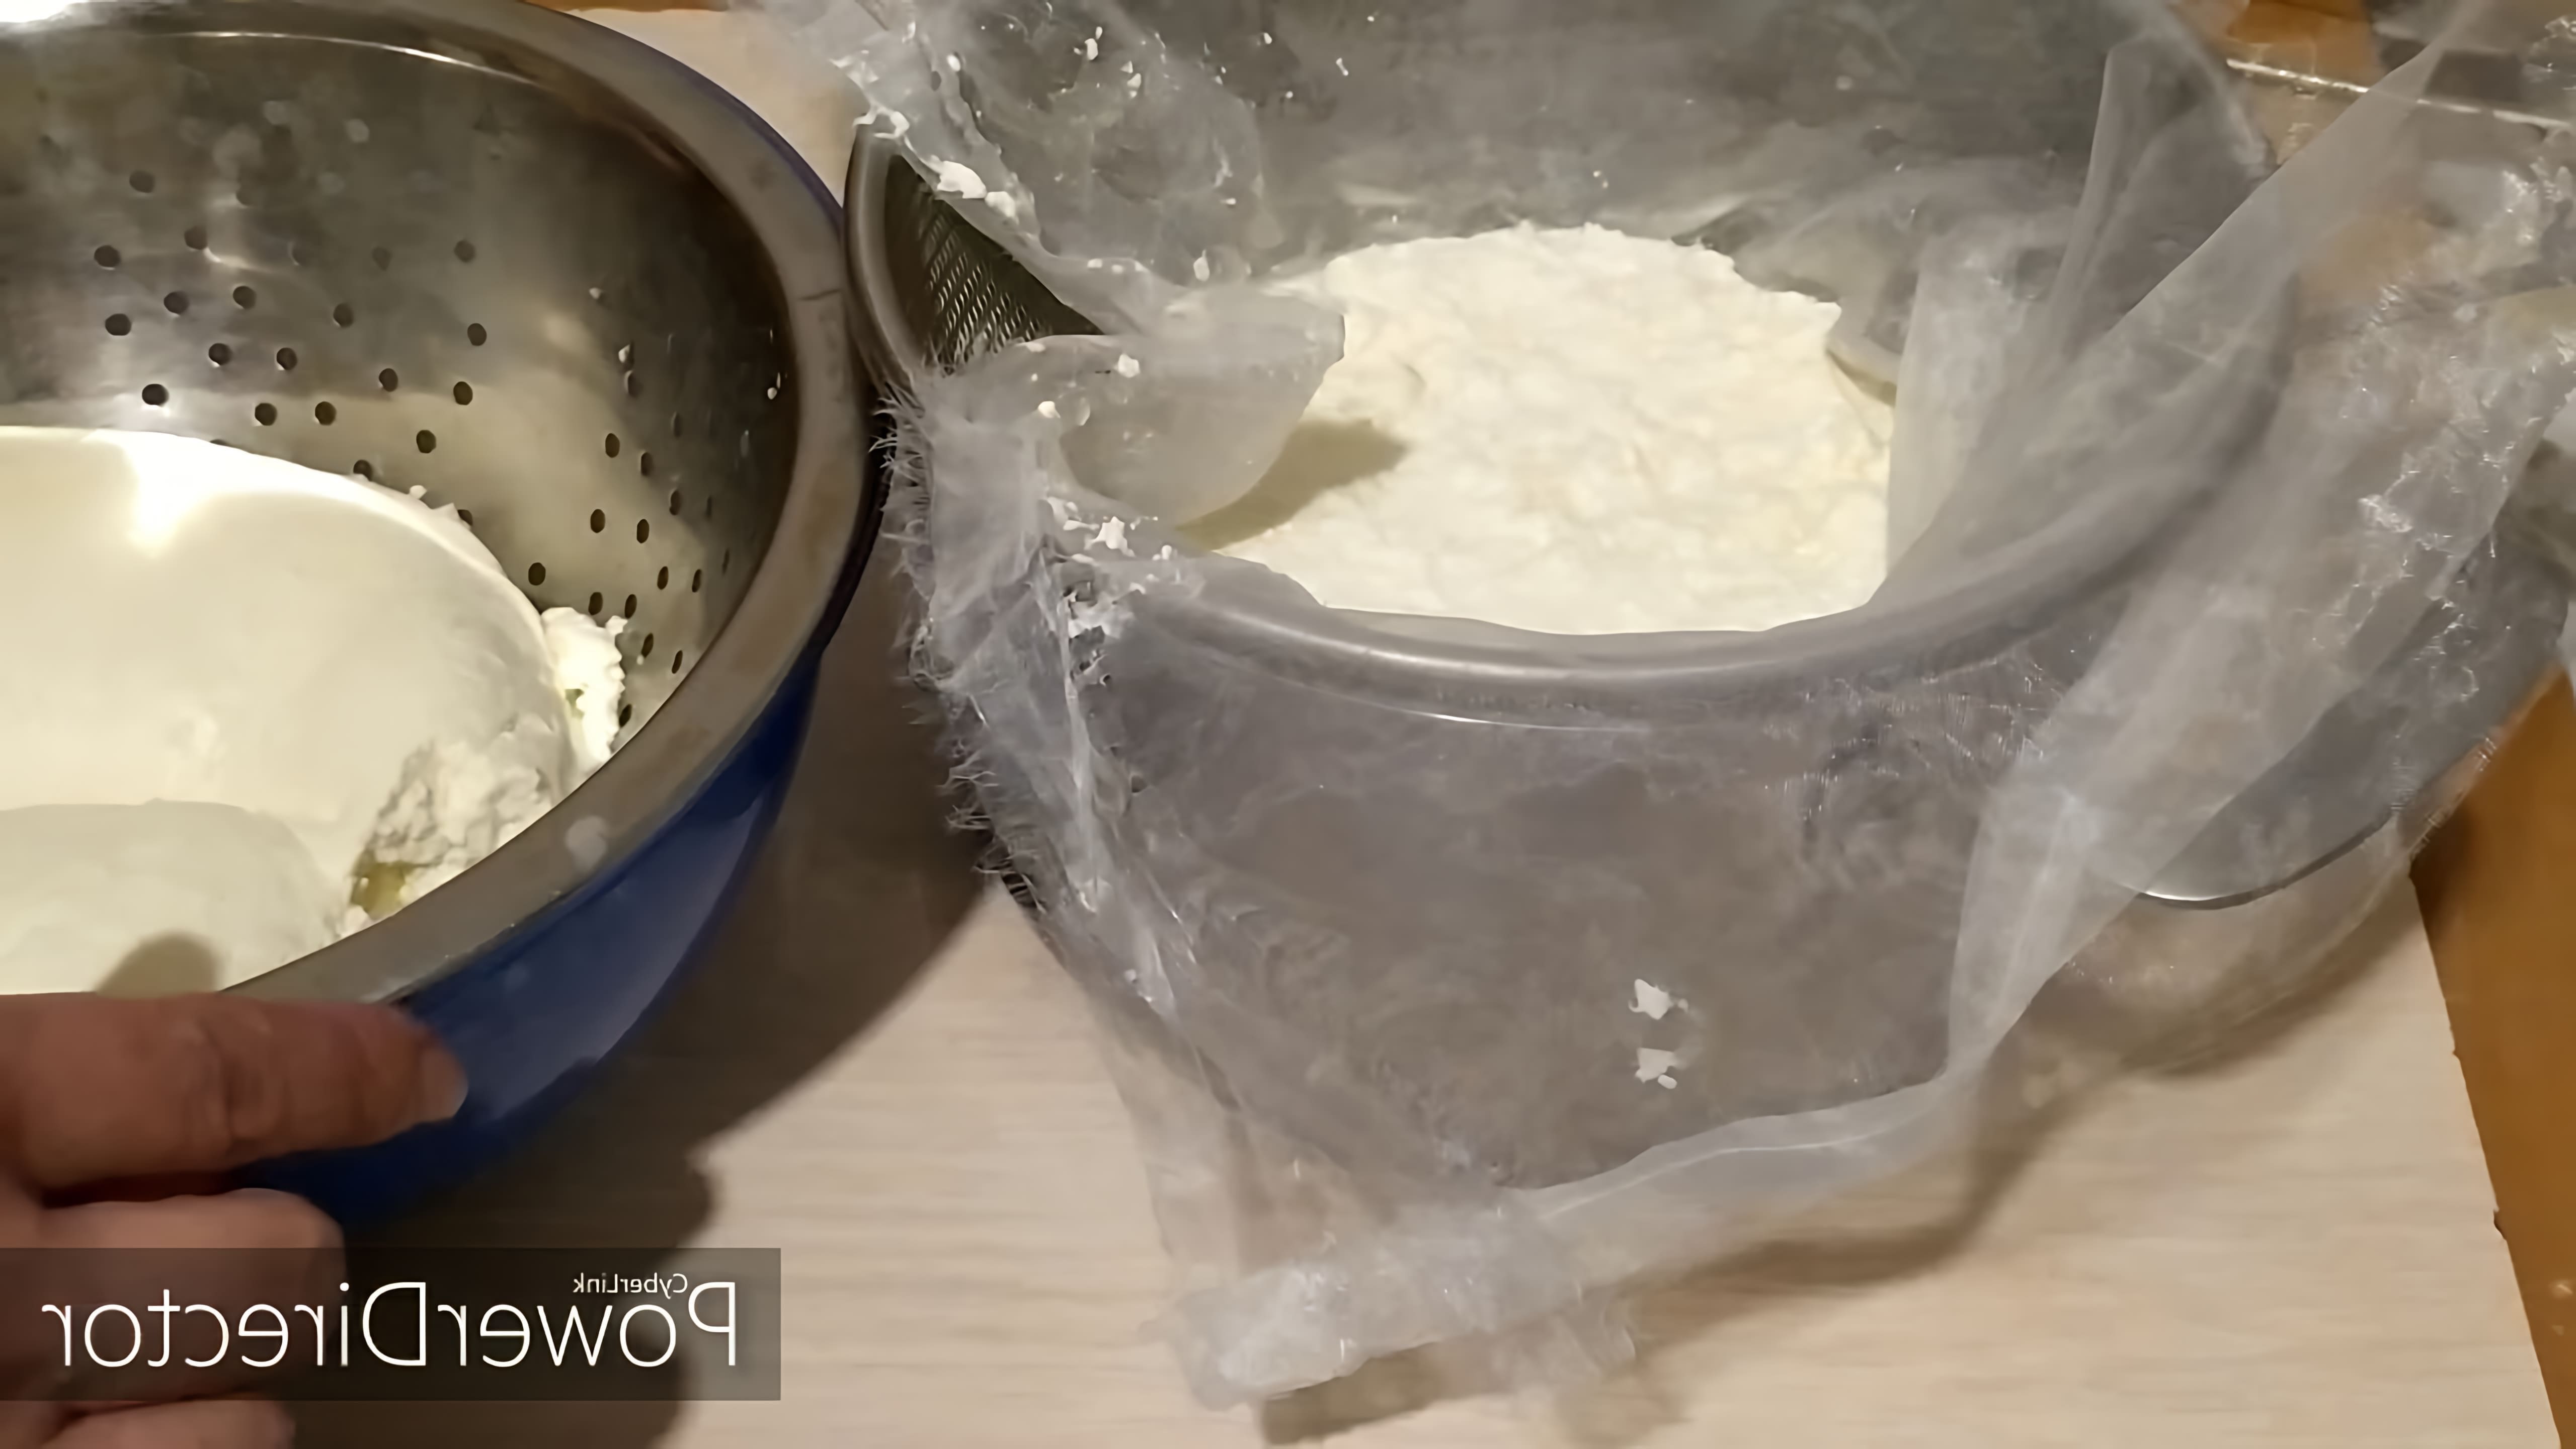 В этом видео демонстрируется процесс приготовления домашнего творога из свежего молока и сметаны